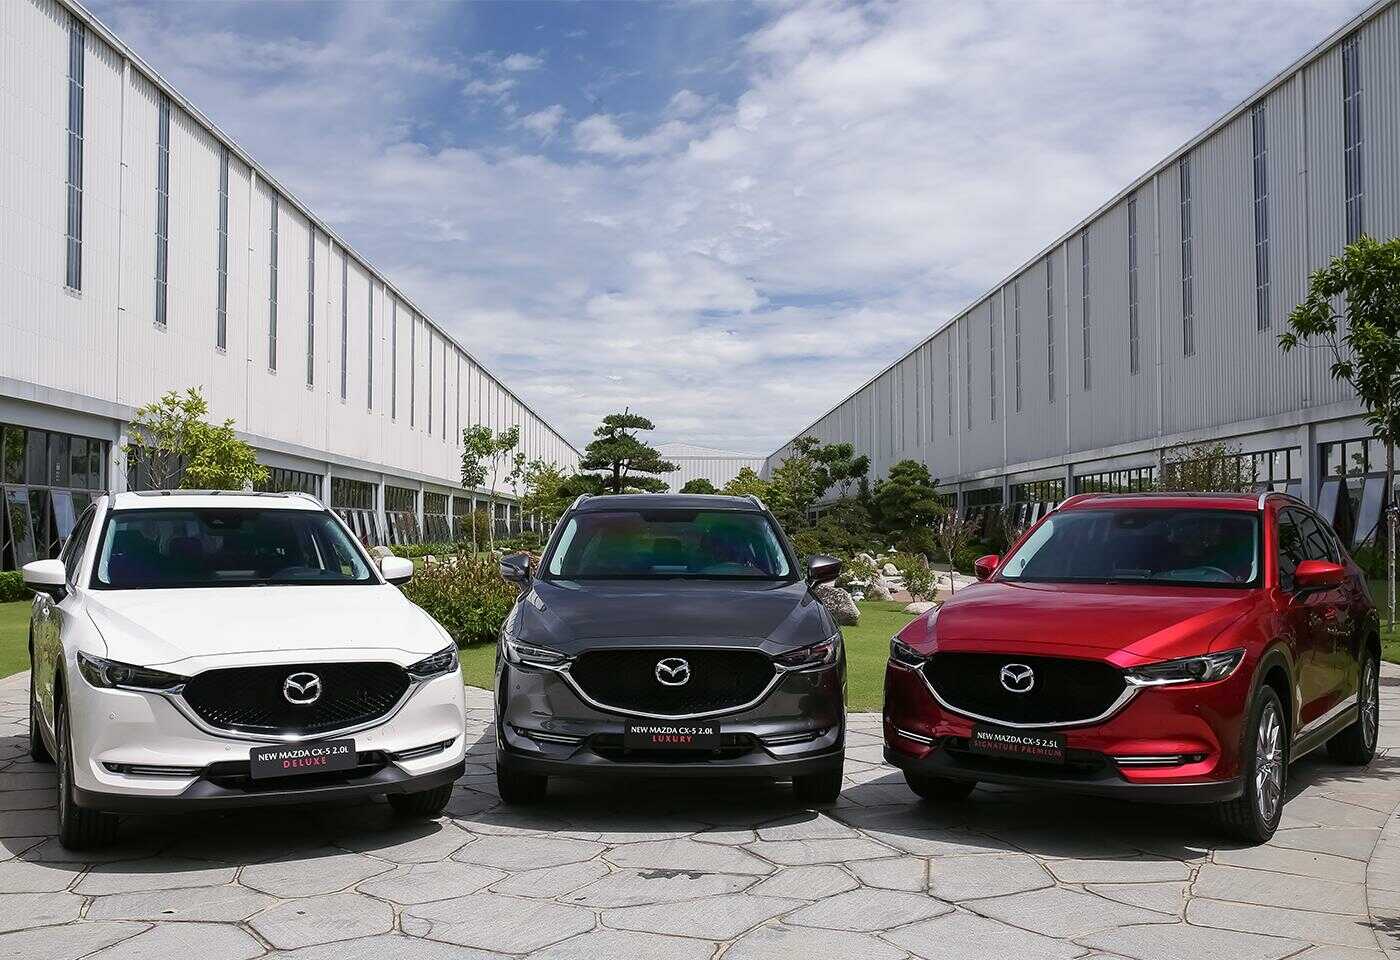 Cho thuê xe Mazda 3, Mazda 6 có lái tại Hà Nội giá rẻ